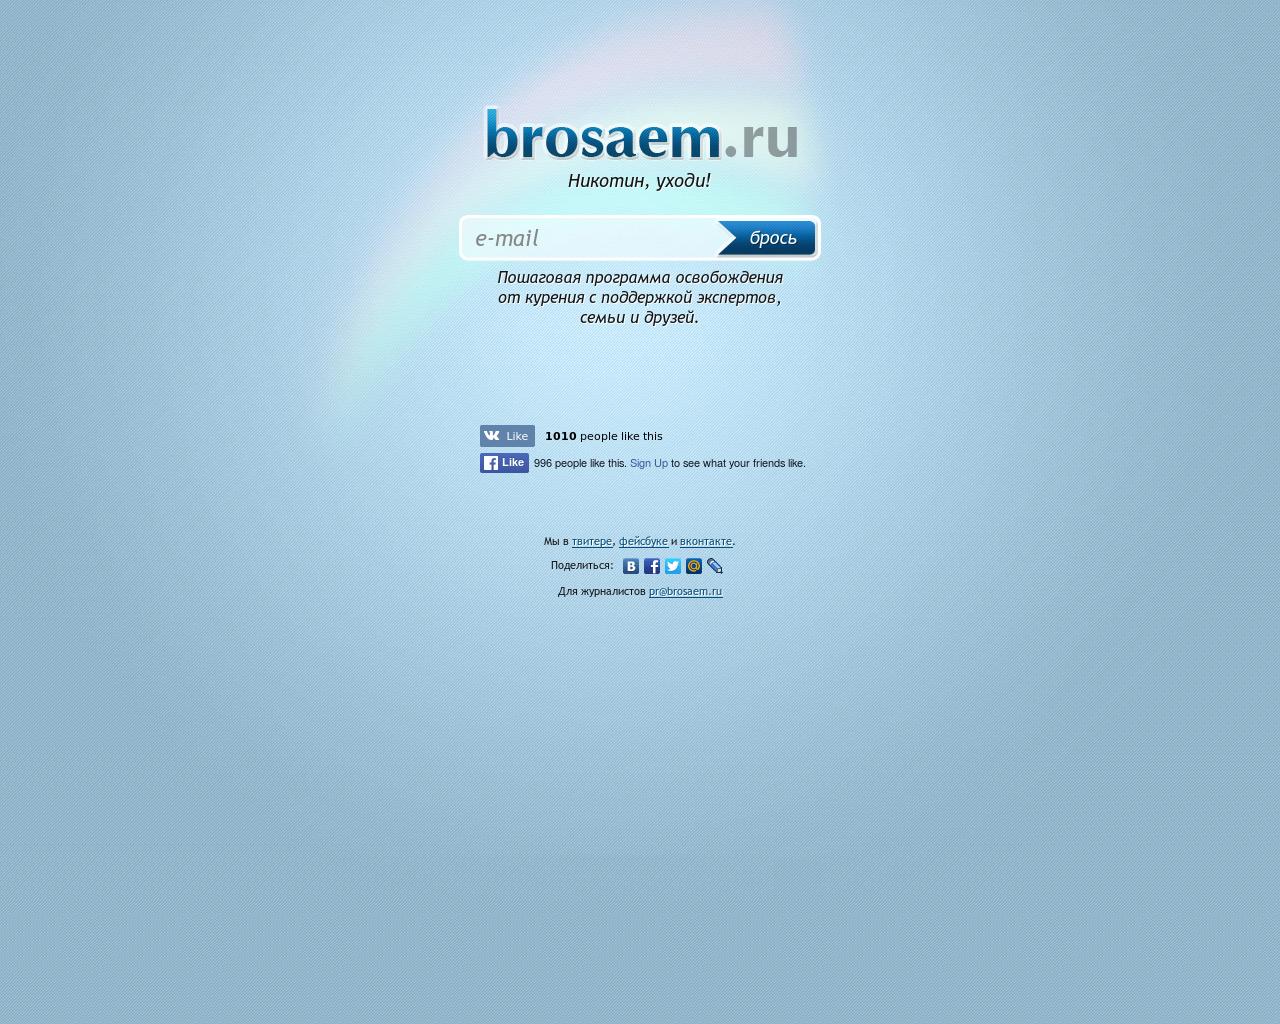 Изображение сайта brosaem.ru в разрешении 1280x1024